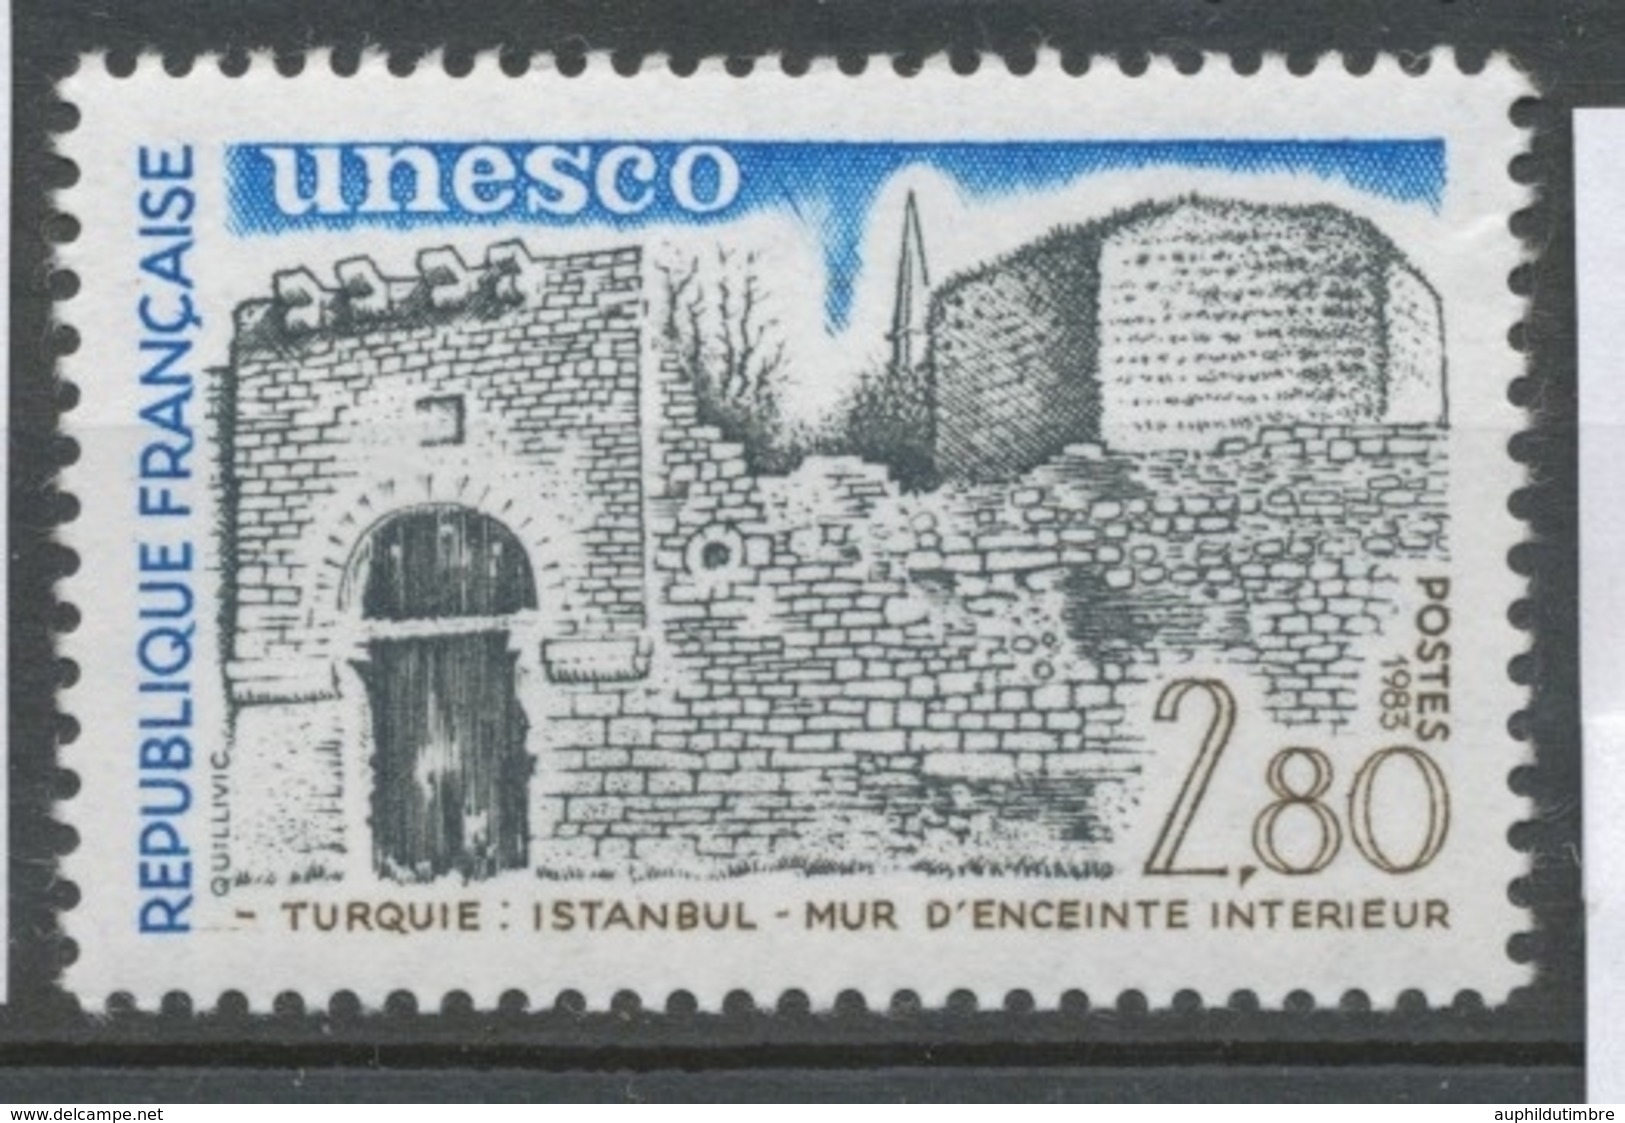 Service N°76 UNESCO Mur D'enceinte Istanbul - Turquie 2f80 ZS76 - Ongebruikt